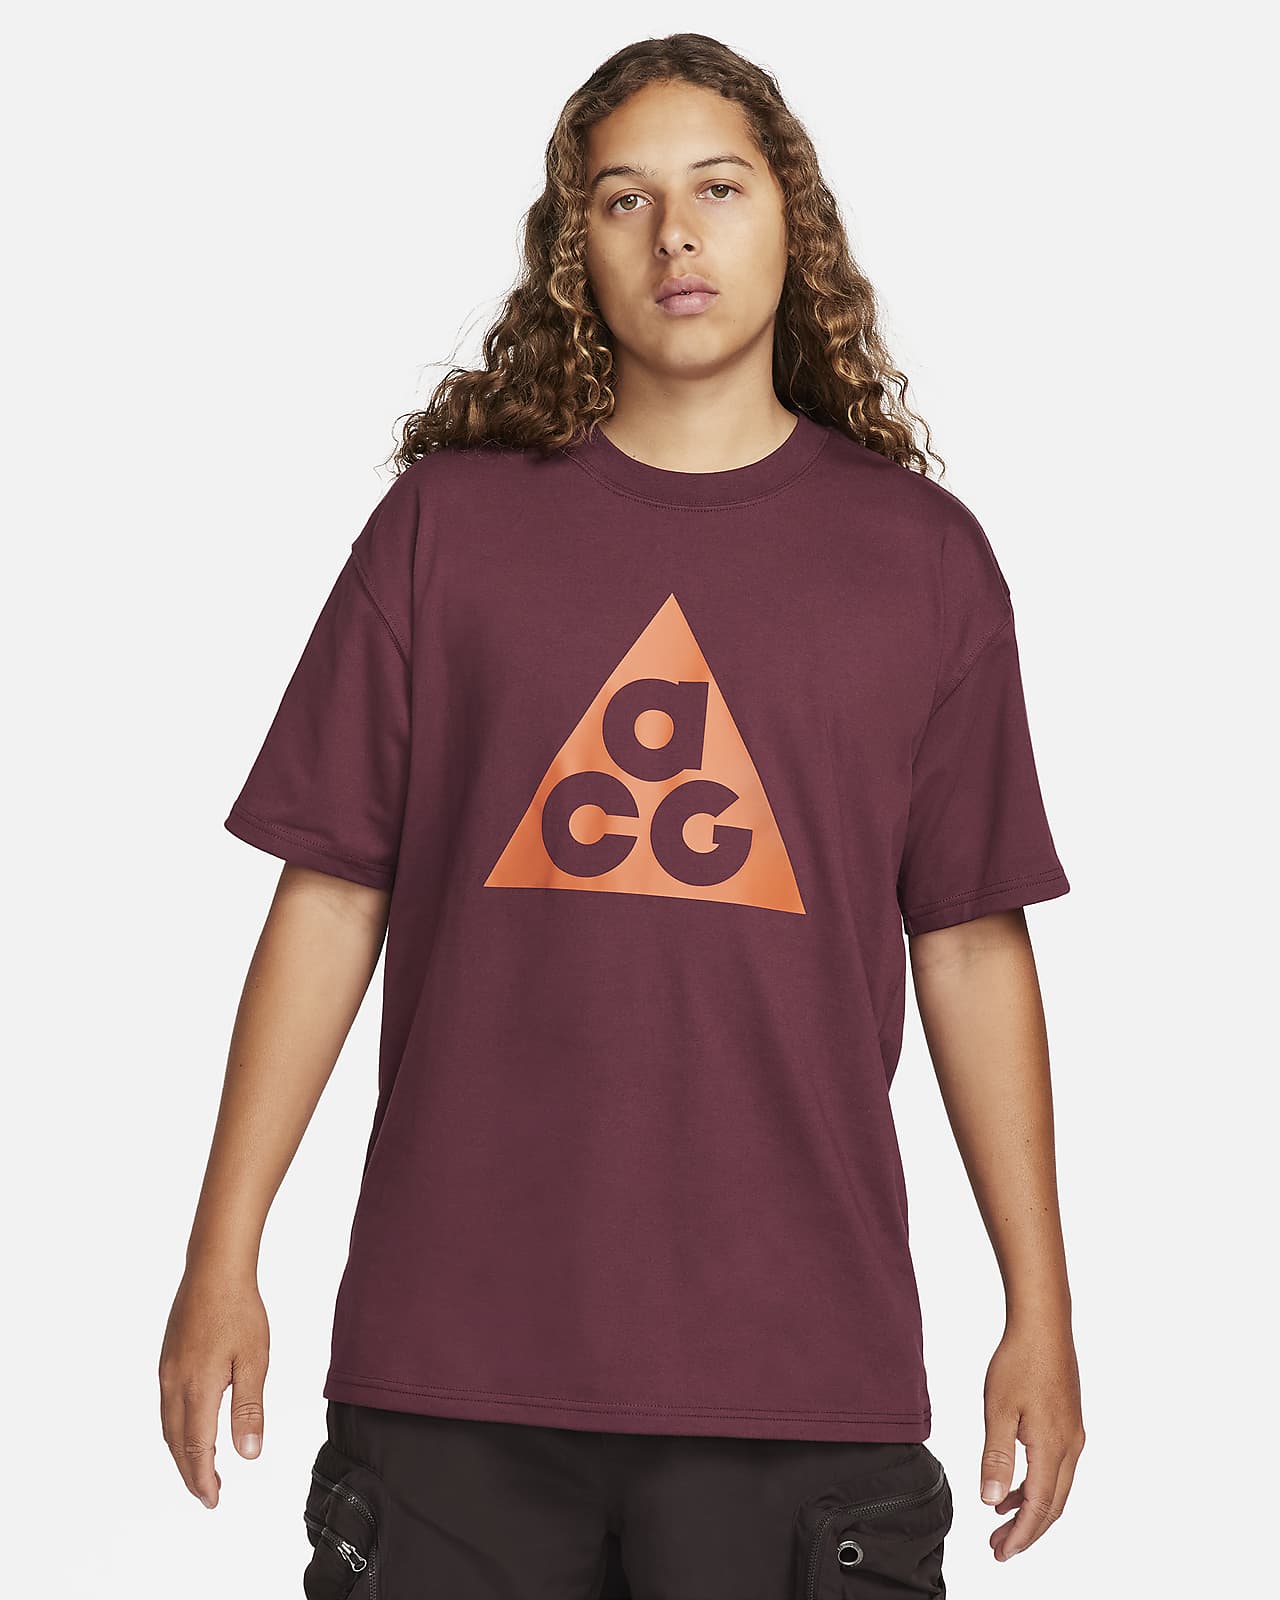 T-shirt Nike ACG för män